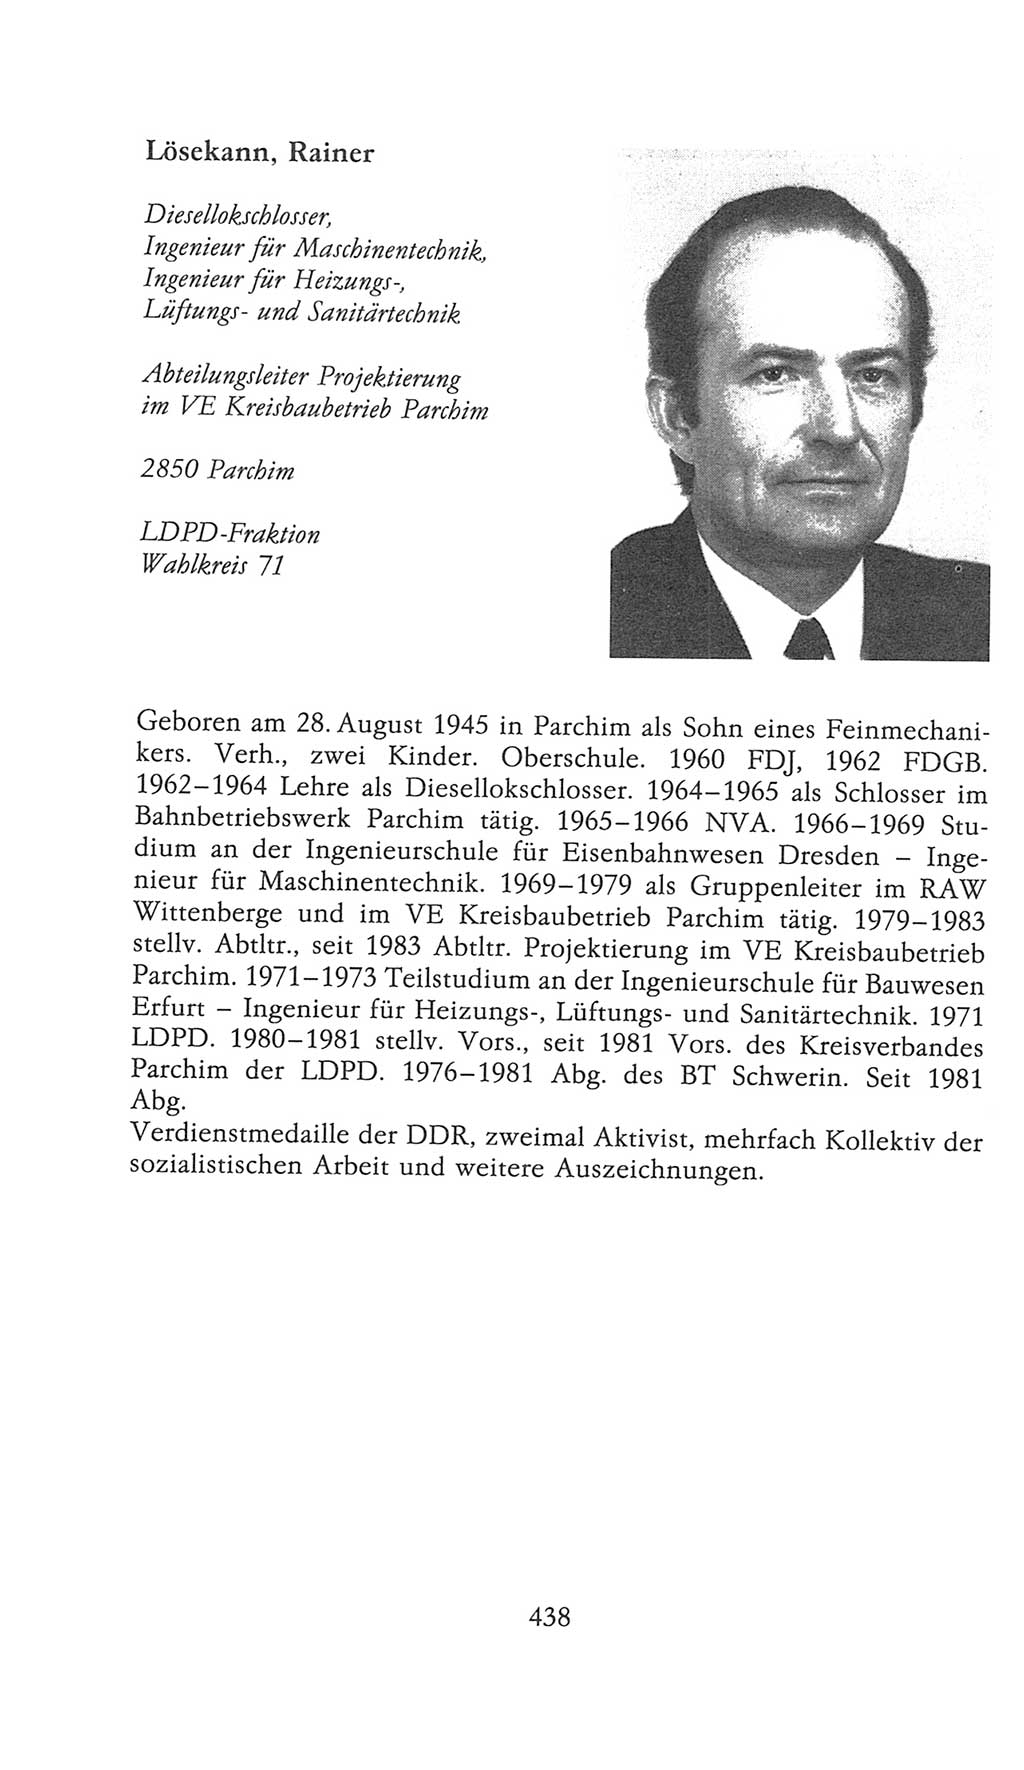 Volkskammer (VK) der Deutschen Demokratischen Republik (DDR), 9. Wahlperiode 1986-1990, Seite 438 (VK. DDR 9. WP. 1986-1990, S. 438)